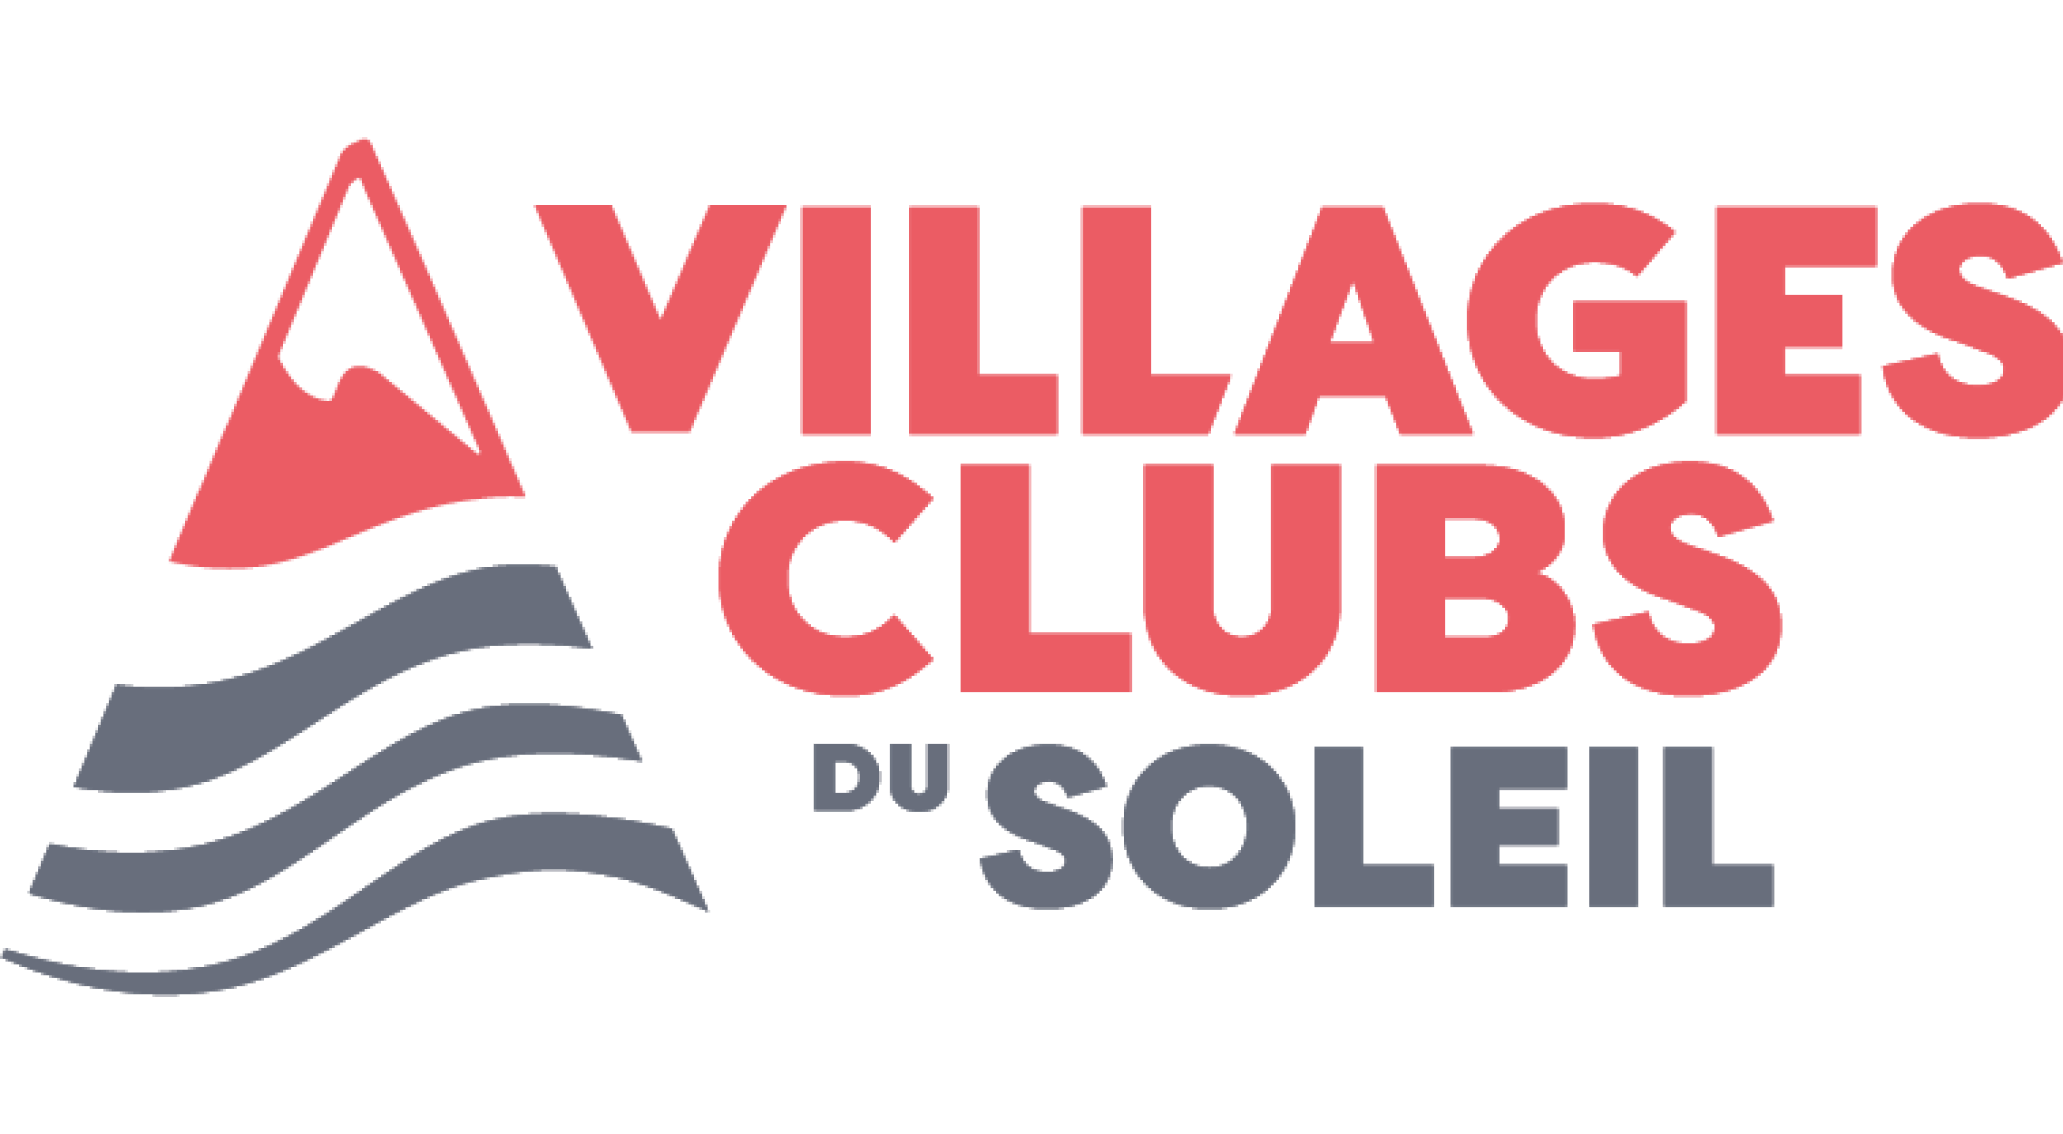 Villages Clubs du soleil